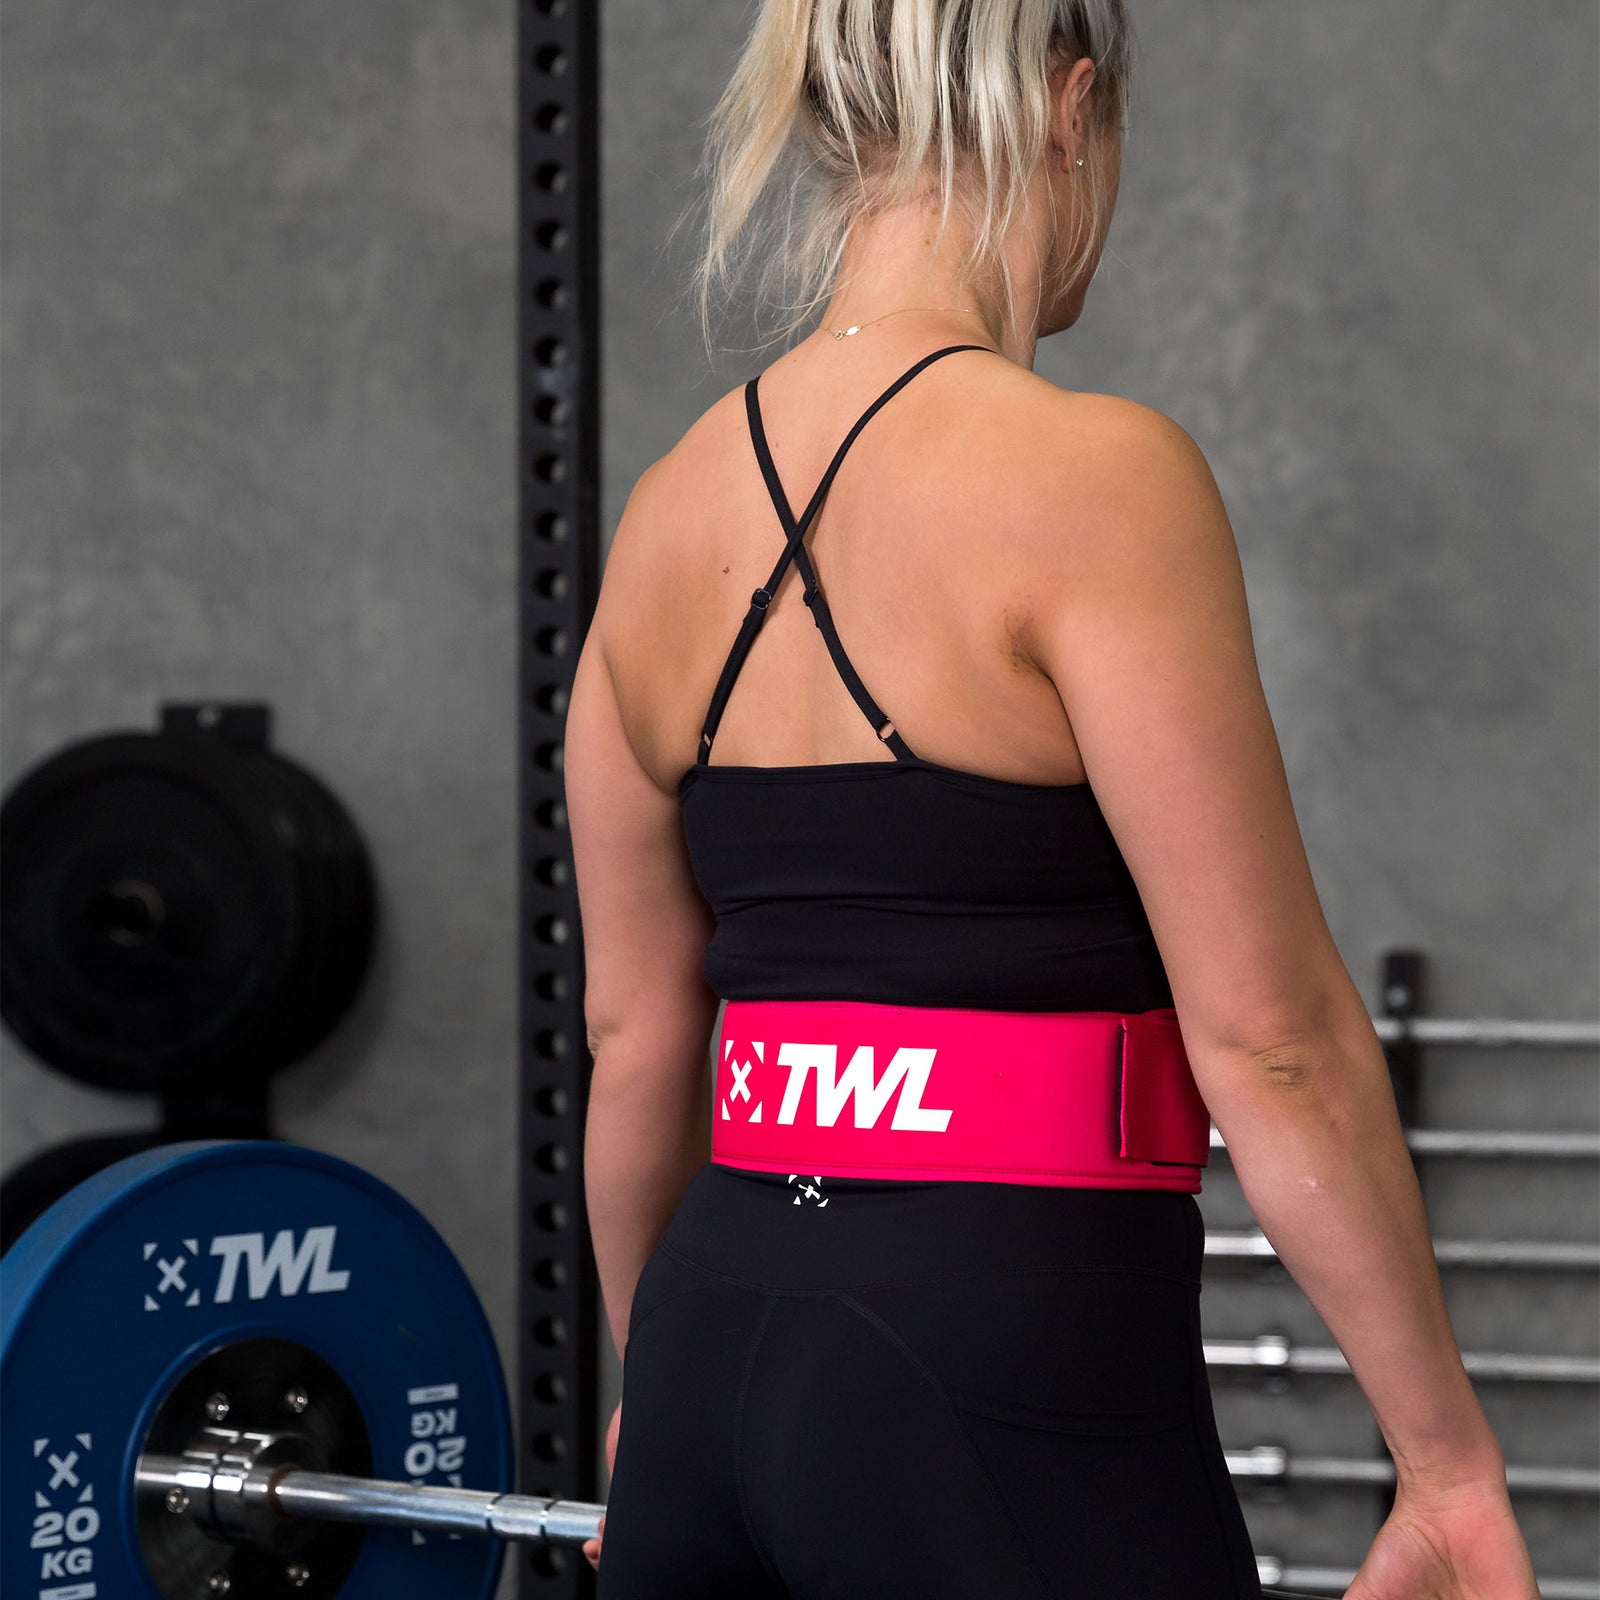 Harbinger 5” Foam Core Women's Weight Lifting Belt – Wod Gear Australia